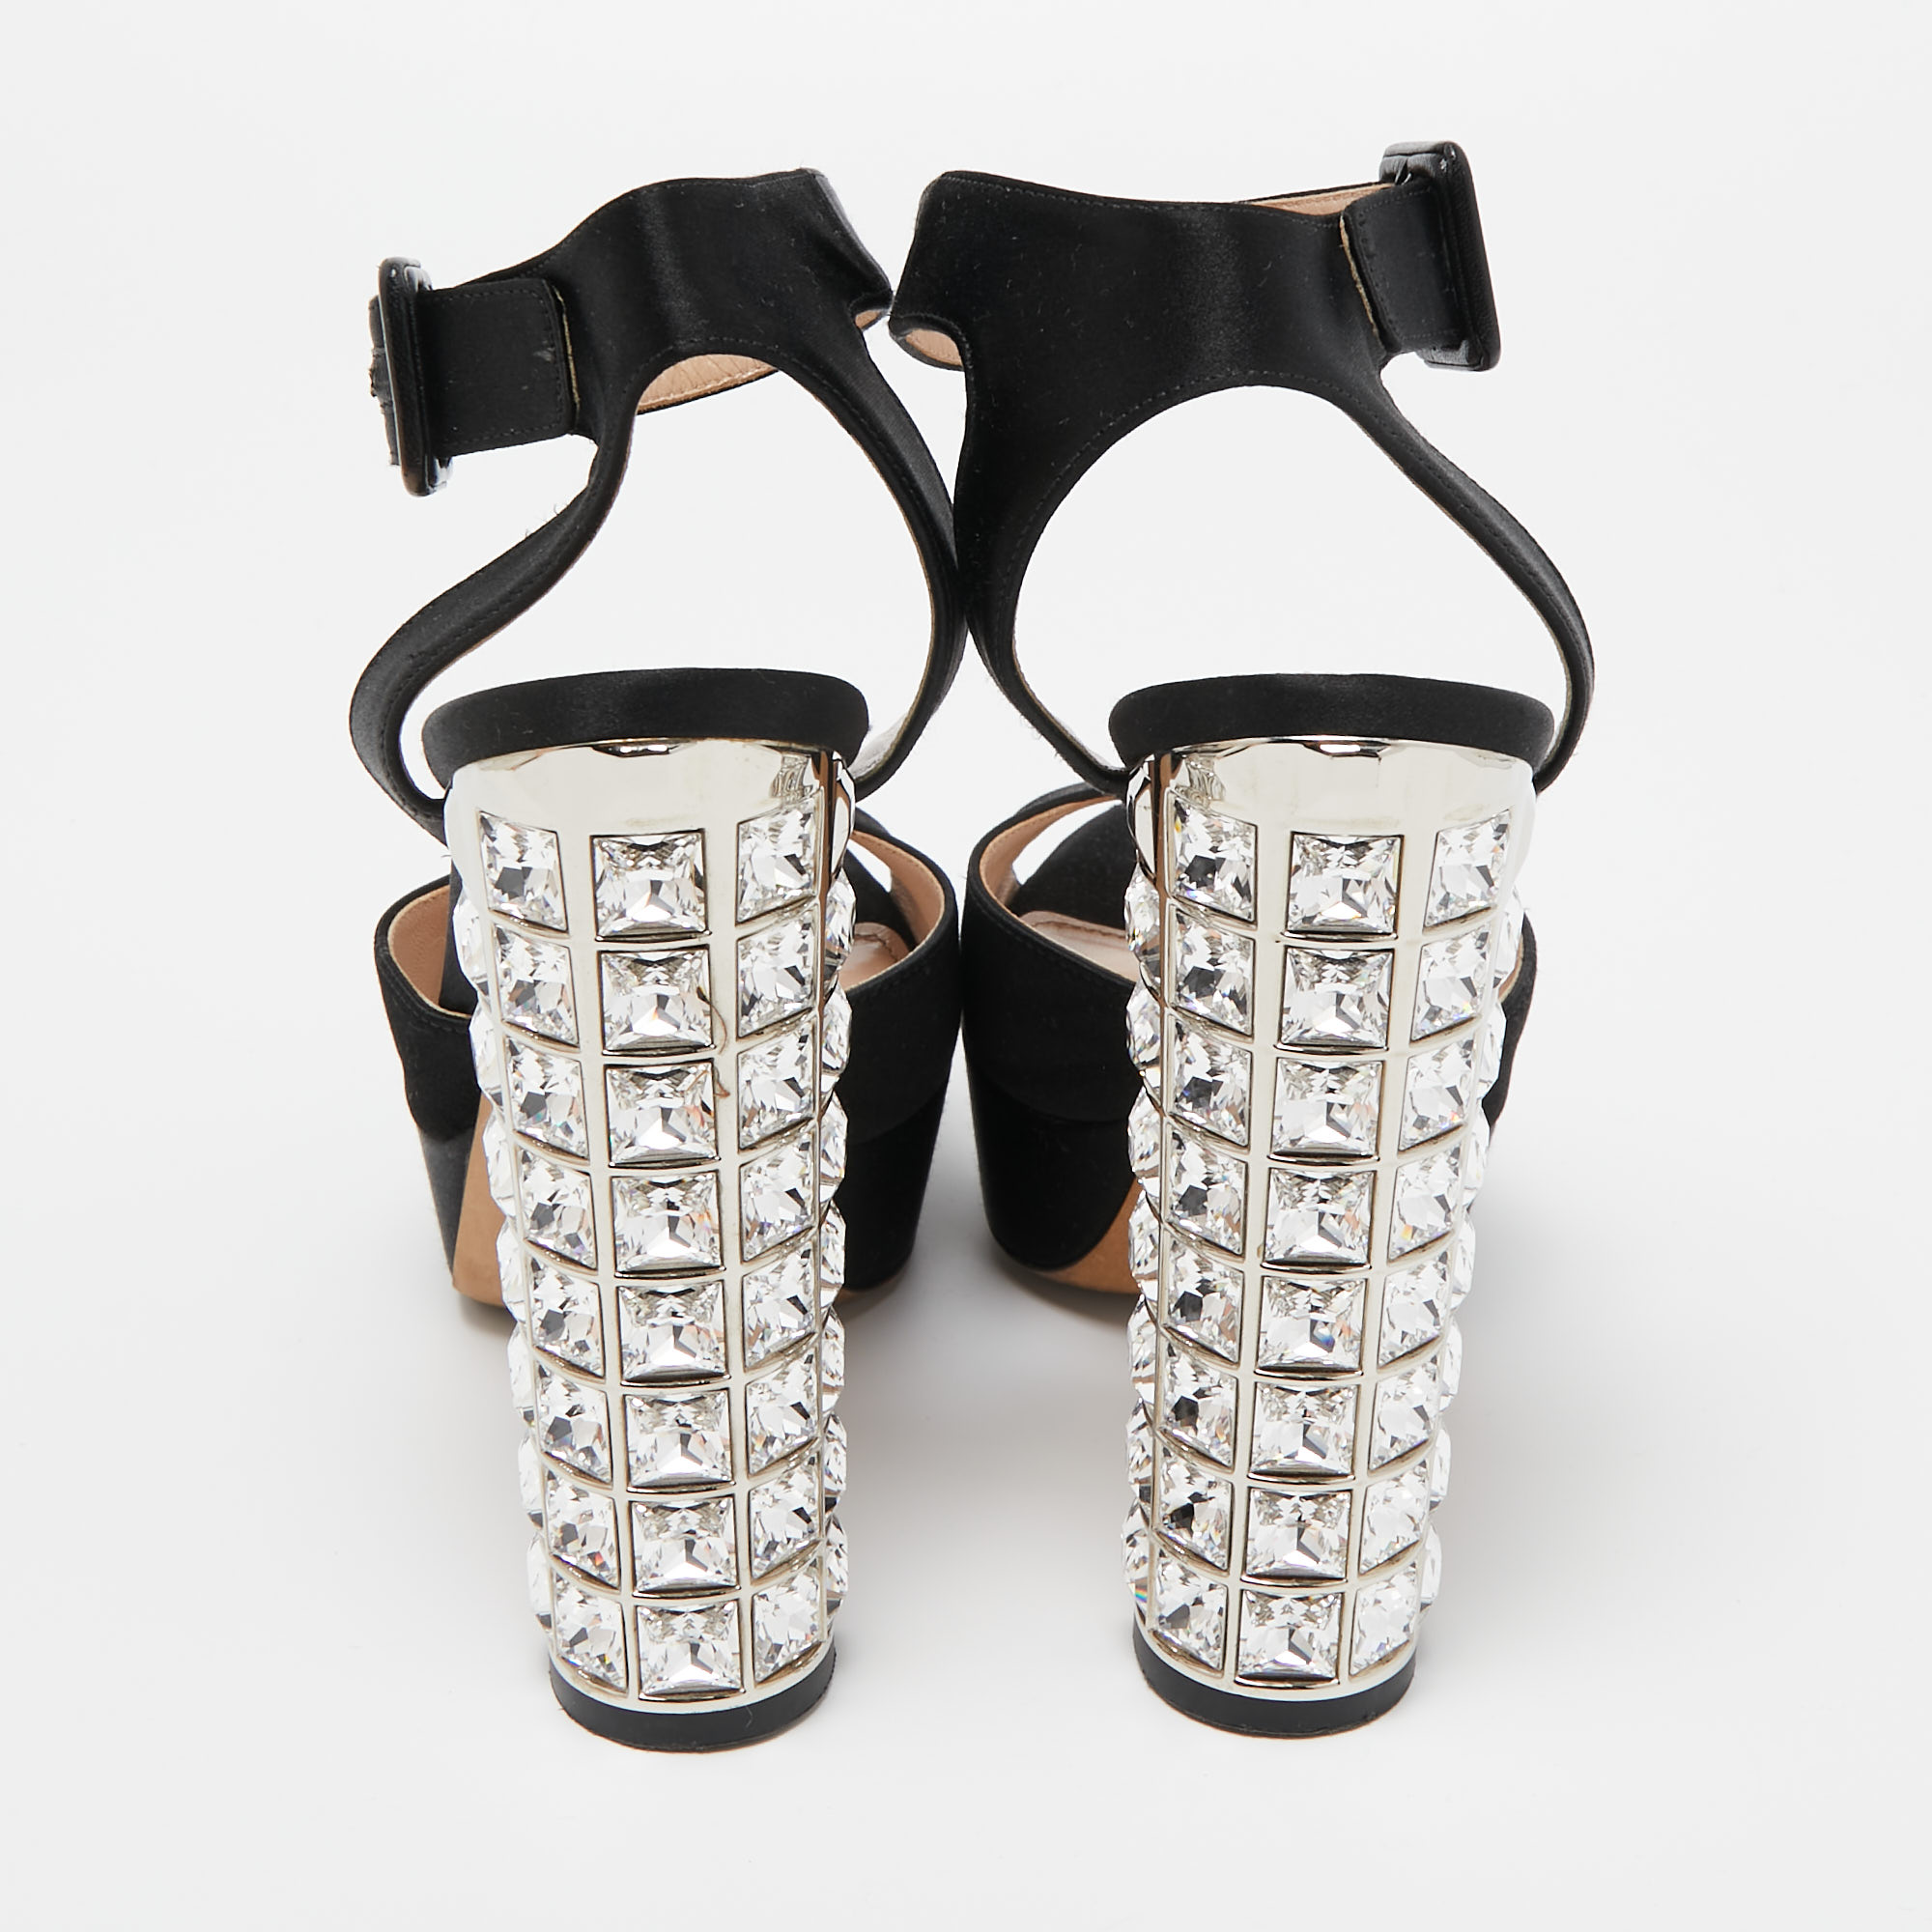 Miu Miu Black Satin Crystal Embellished Platform Ankle Strap Sandals Size 36.5